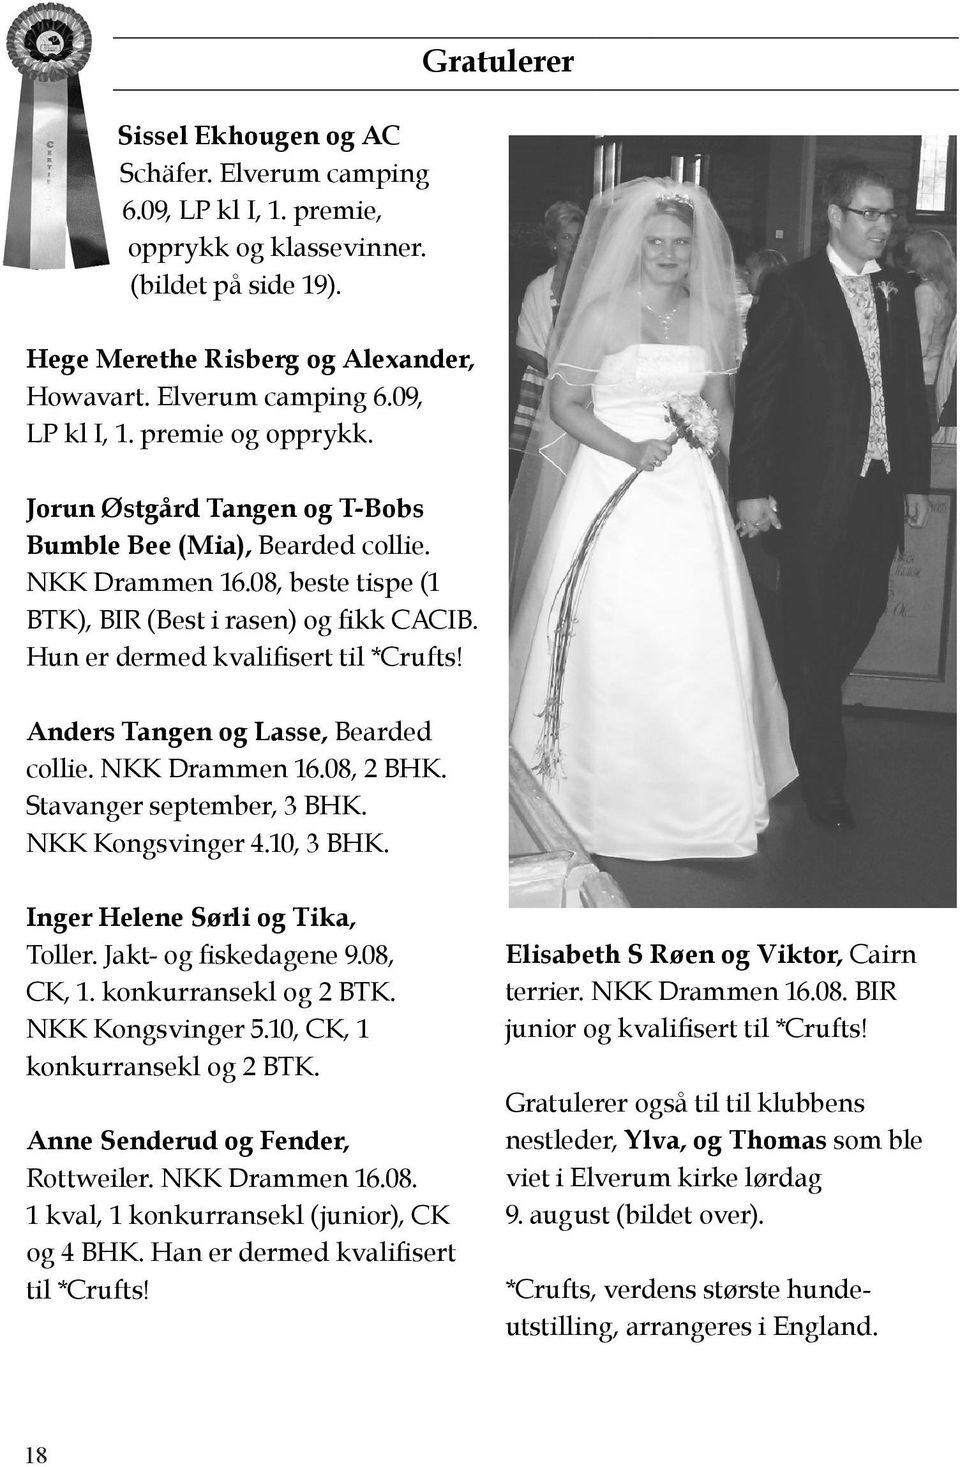 Anders Tangen og Lasse, Bearded collie. NKK Drammen 16.08, 2 BHK. Stavanger september, 3 BHK. NKK Kongsvinger 4.10, 3 BHK. Inger Helene Sørli og Tika, Toller. Jakt- og fiskedagene 9.08, CK, 1.